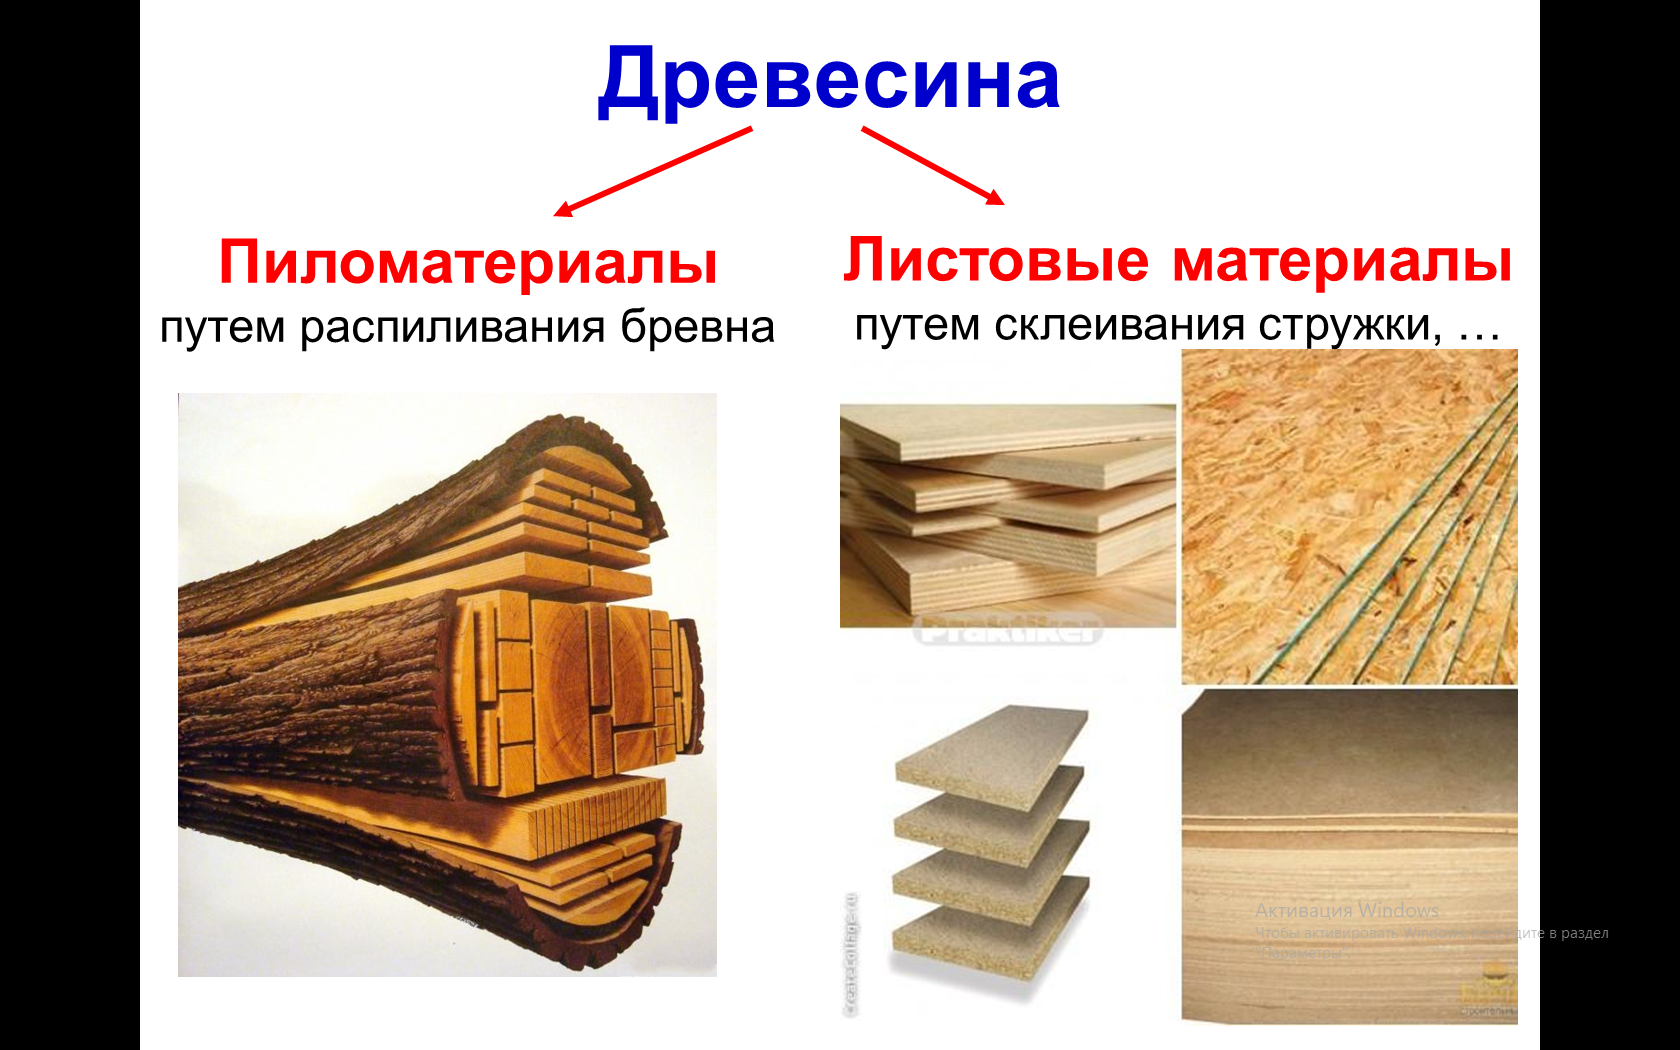 Пиломатериалы из древесины